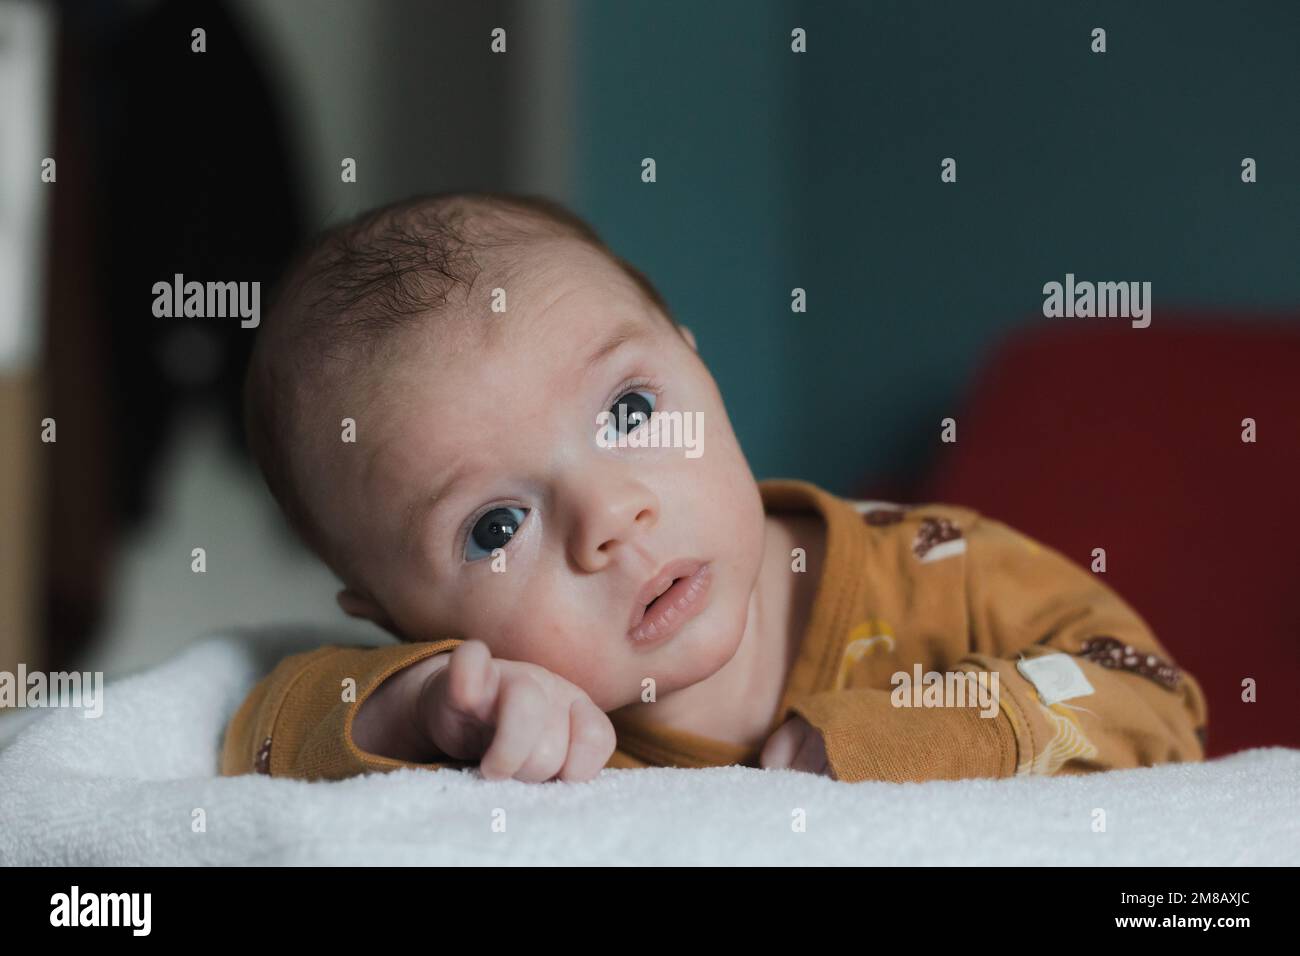 Bébé mignon garçon de 3 à 6 mois allongé sur son ventre et regardant la caméra avec une expression faciale sérieuse Banque D'Images